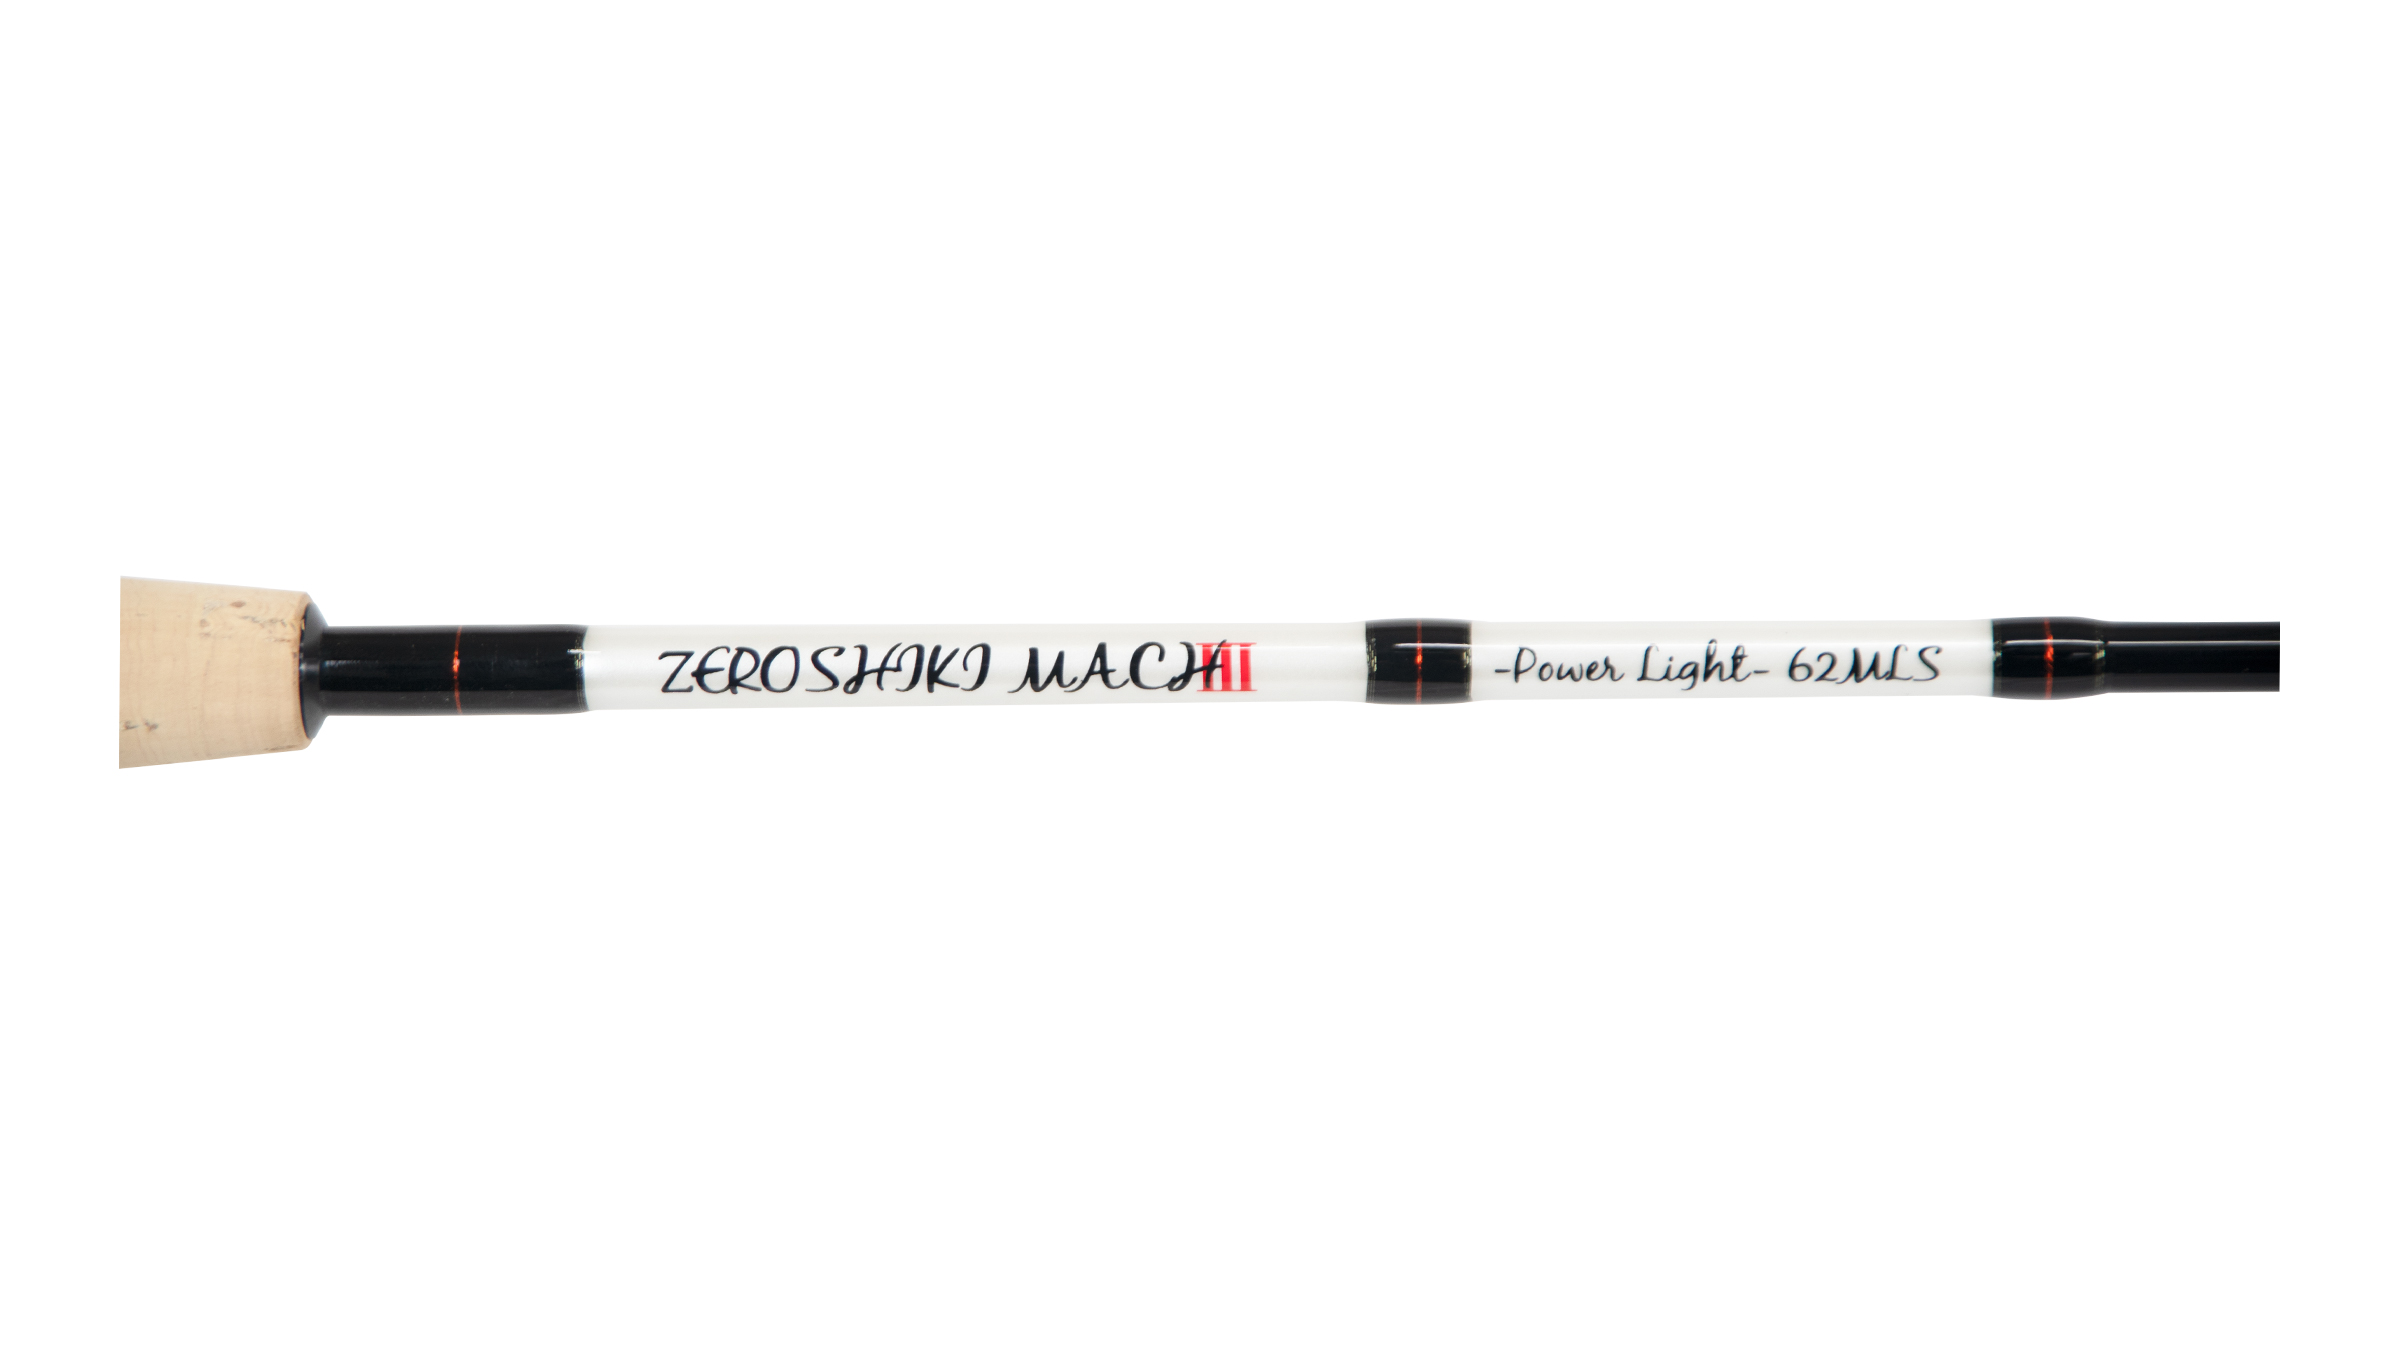 ZEROSHIKI MACHⅢ powerlight（ゼロシキ マッハスリー パワーライト 